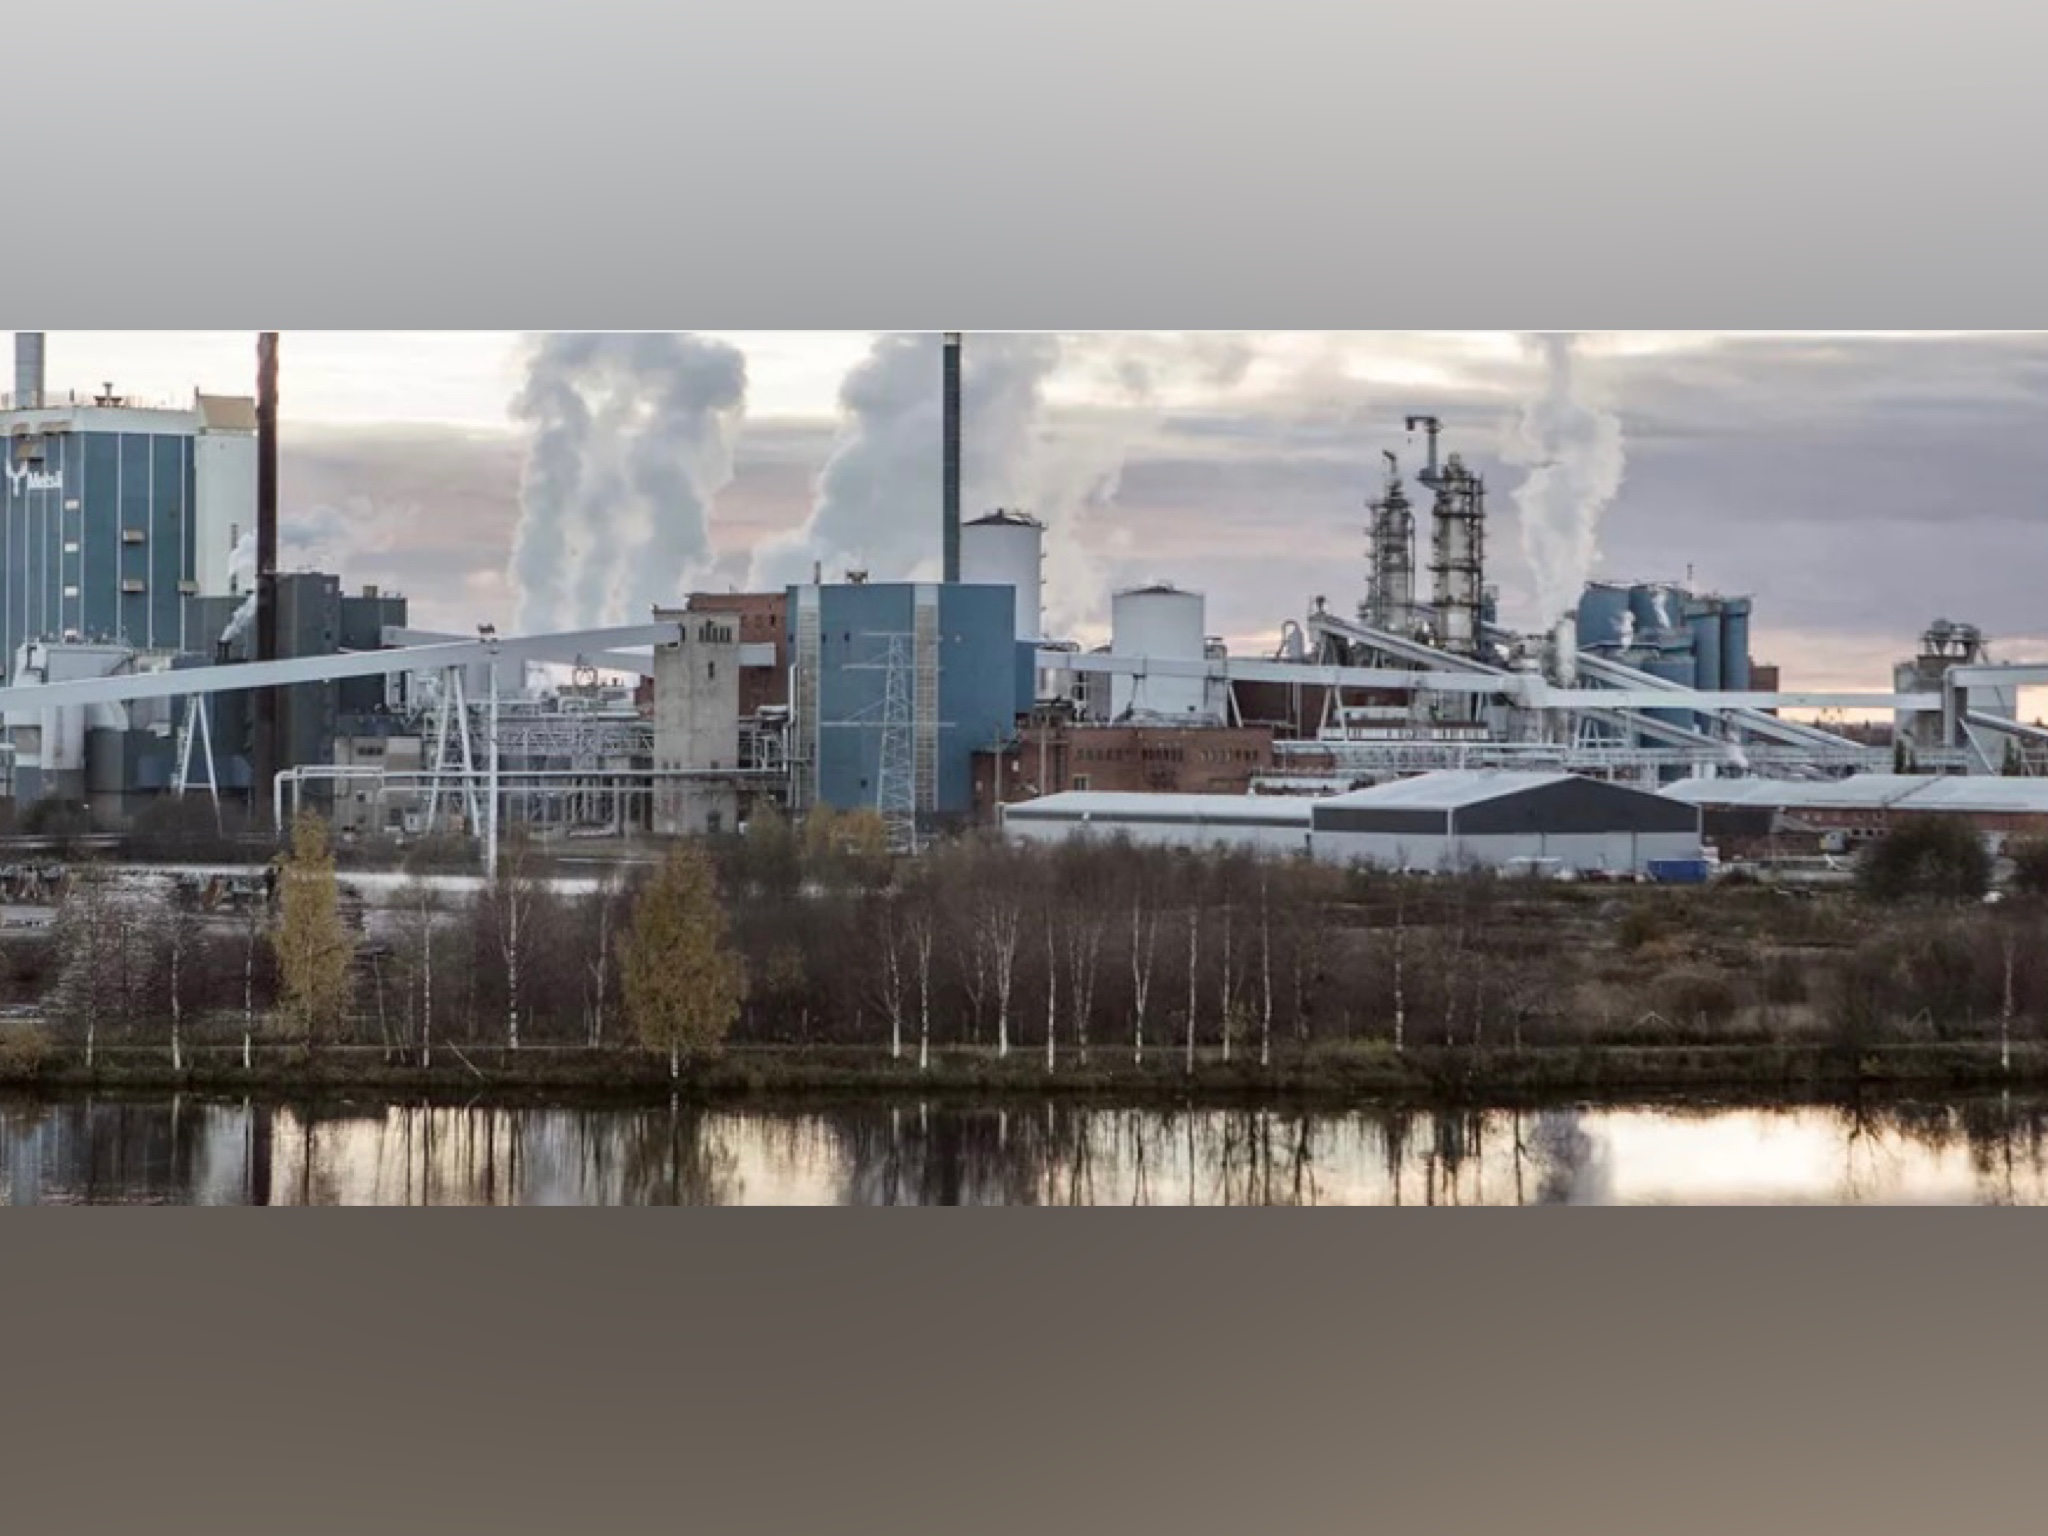 Metsa Board подписала соглашение о перевозке продукции картоноделательного завода в финском Кеми в порт Айос